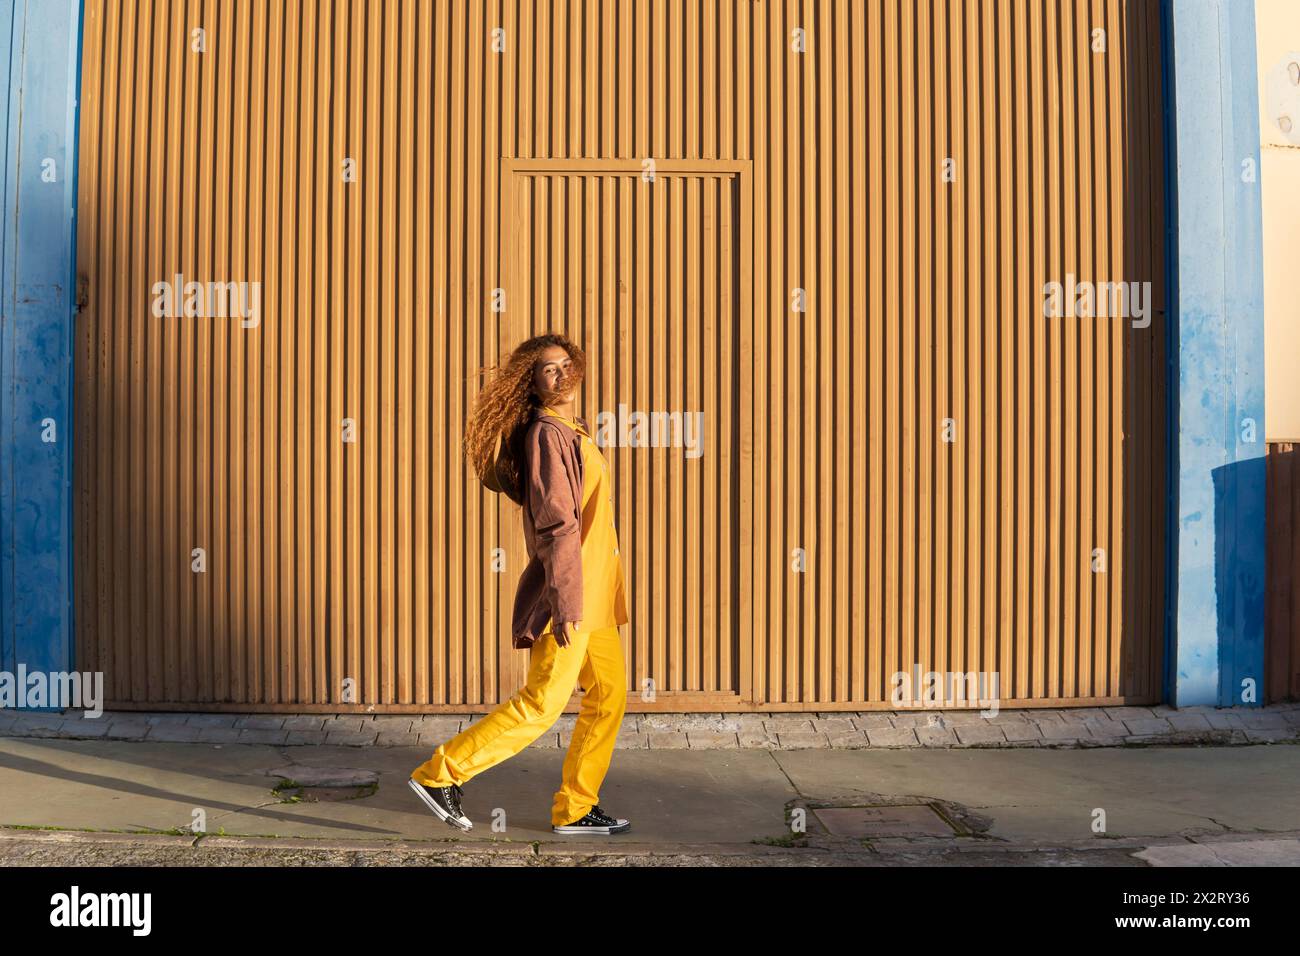 Lächelnde junge Frau in Jacke, die auf einem Fußweg nahe der orangefarbenen Metallwand läuft Stockfoto